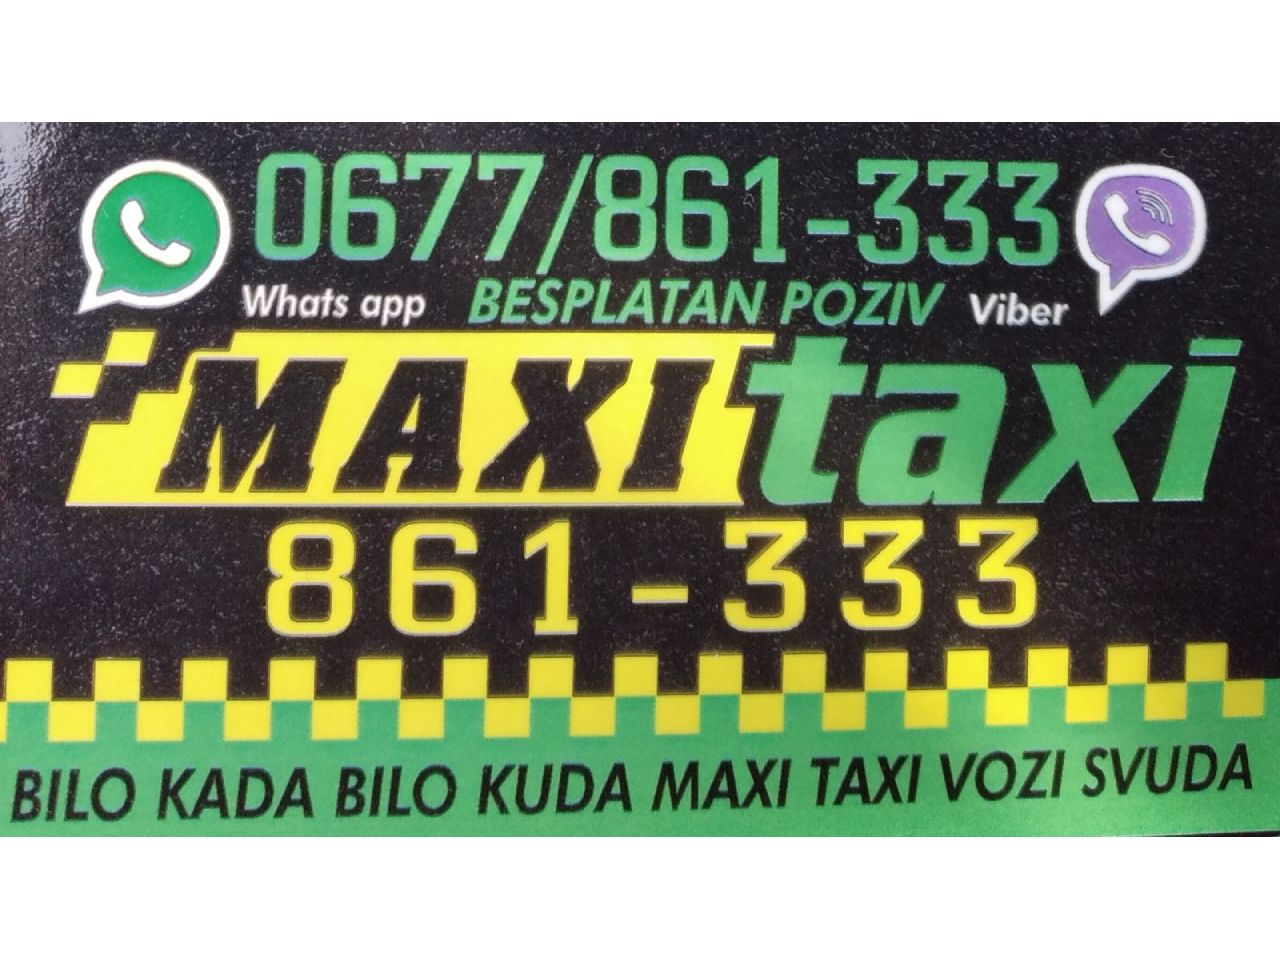 Photo 6 - OUR MAXI TAXI - TAXI services, Bajina Basta